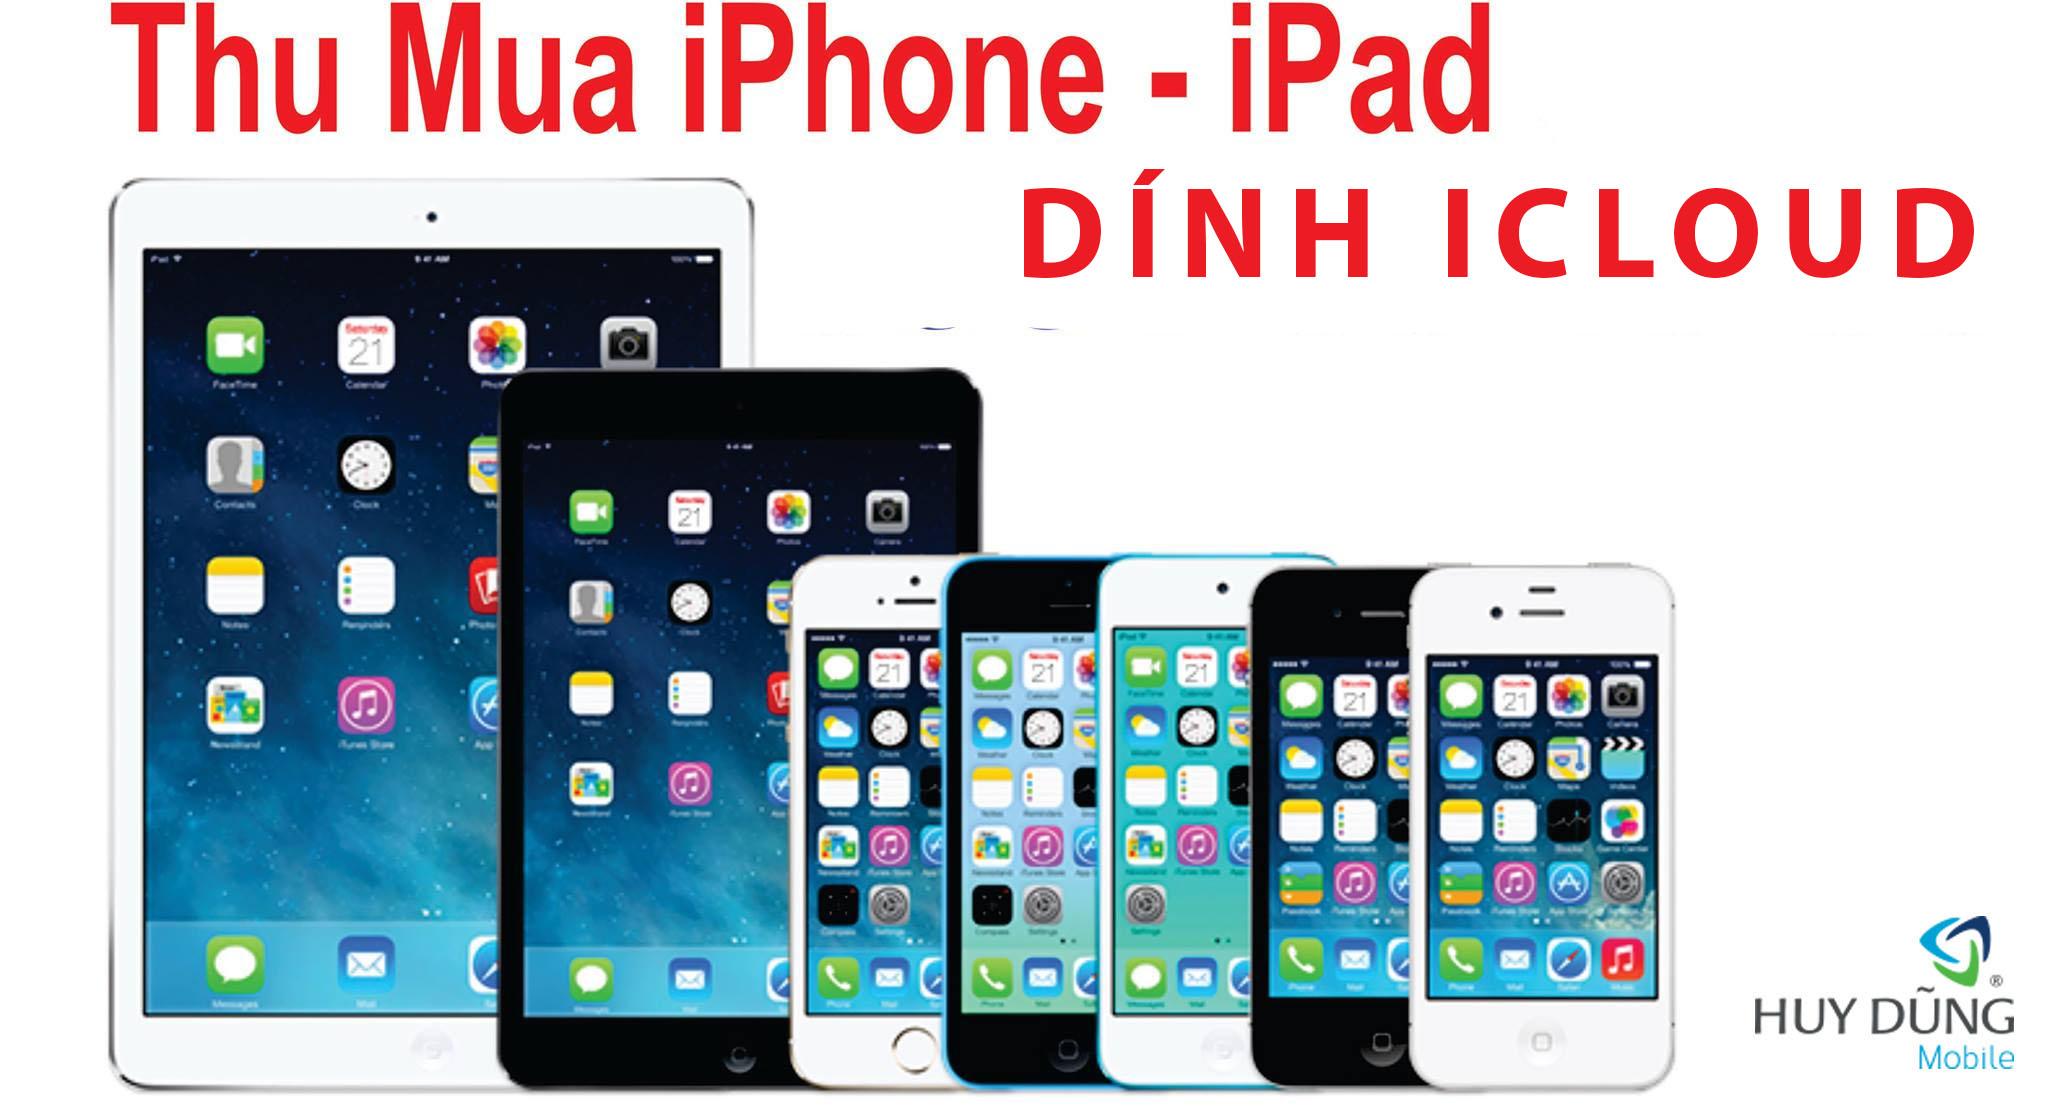 Thu mua xác iPhone, iPad bị dính iCloud giá cao tại TPHCM